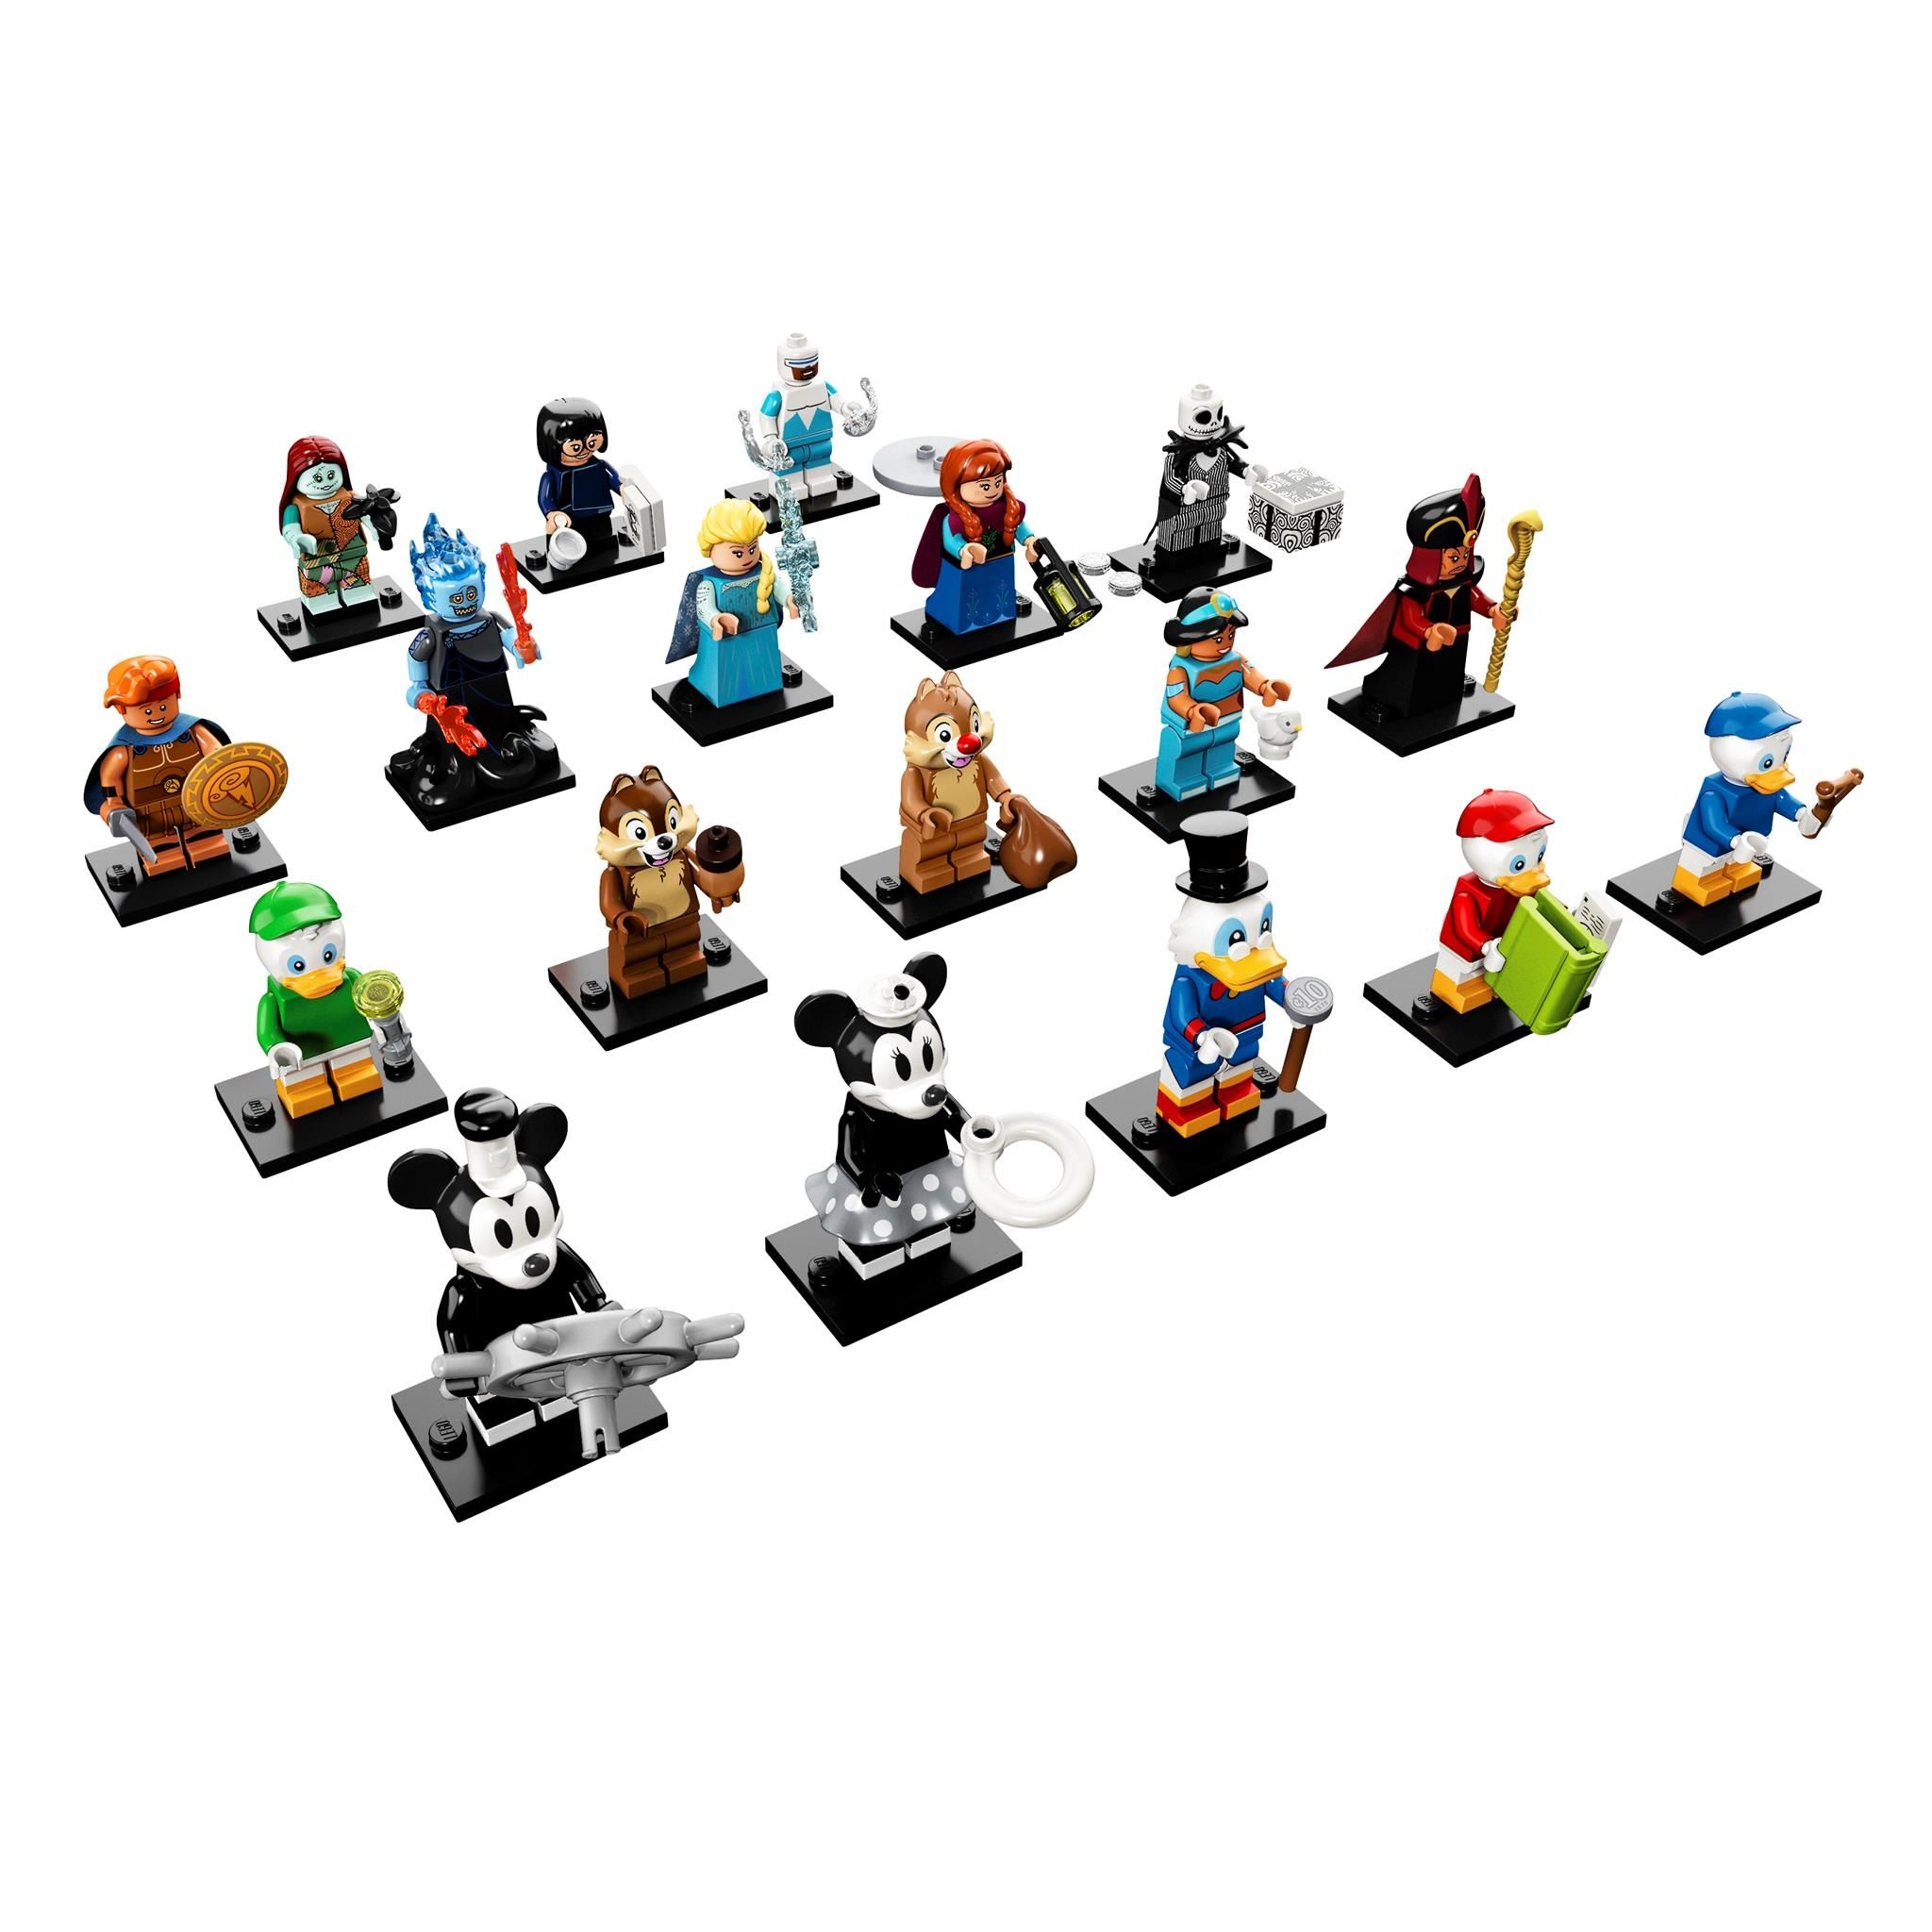 Đồ Chơi Xếp Hình LEGO Nhân Vật LEGO Disney 2 71024